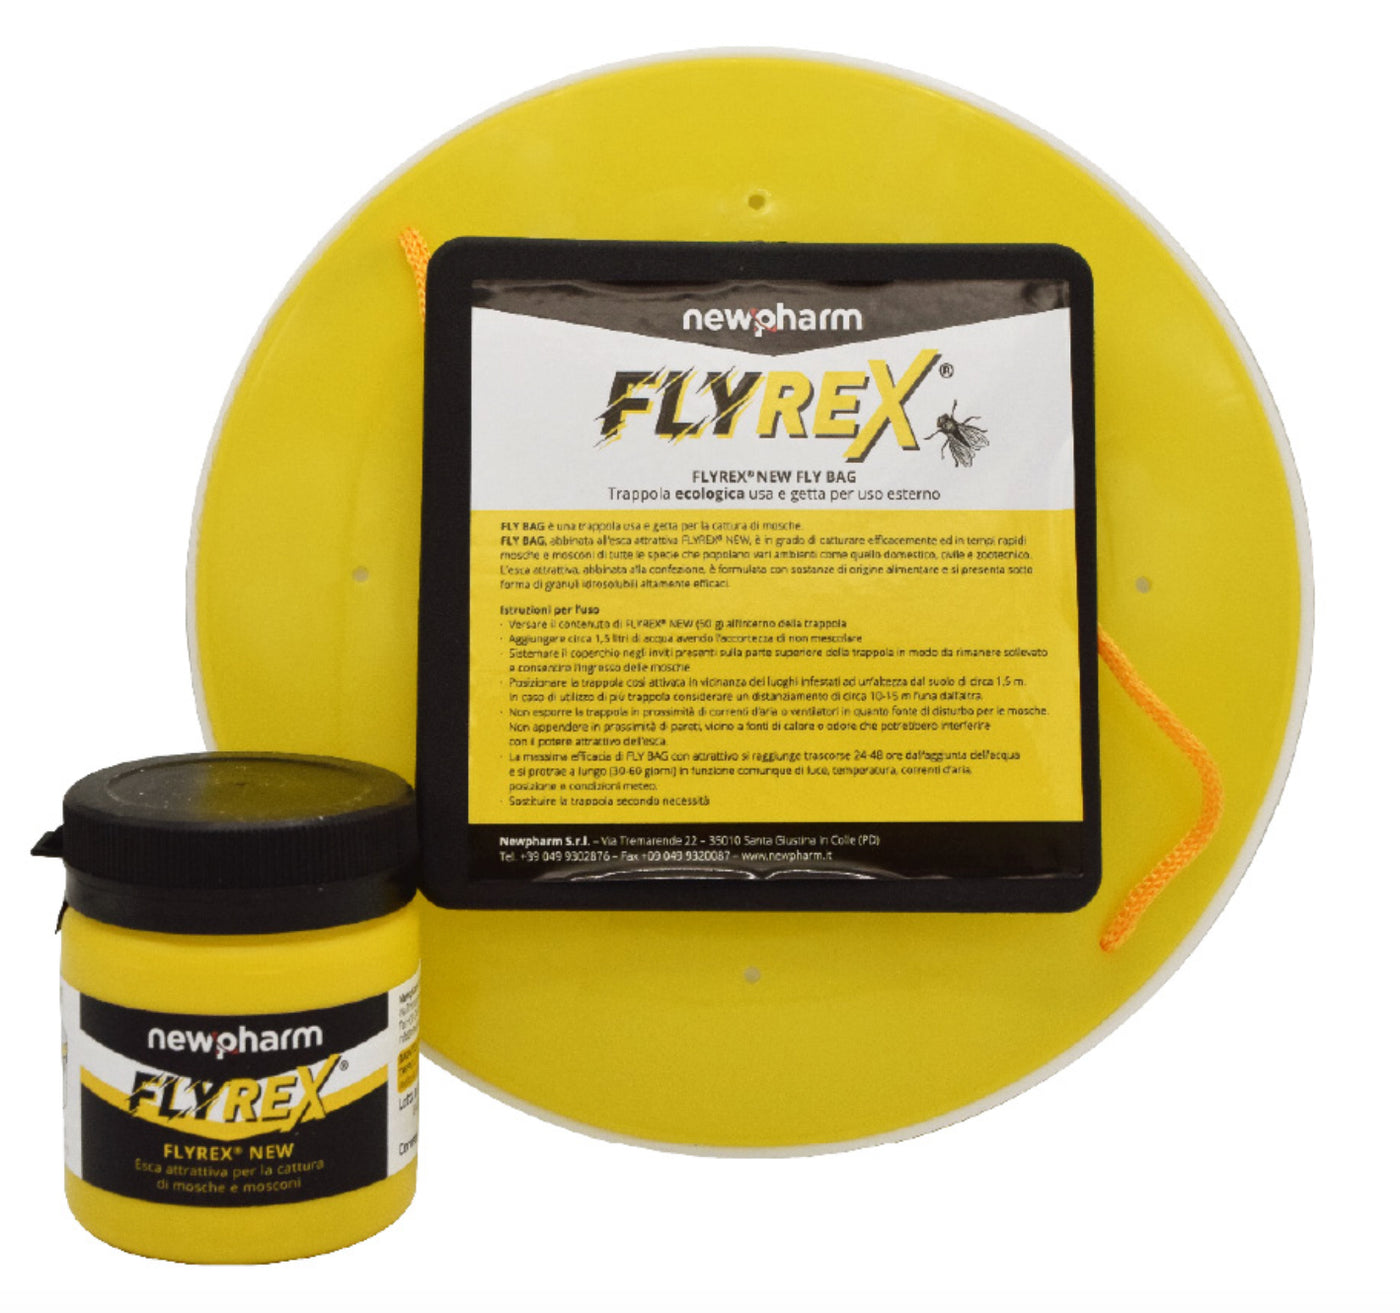 FLYREX - Soluzione efficace per eliminare le mosche